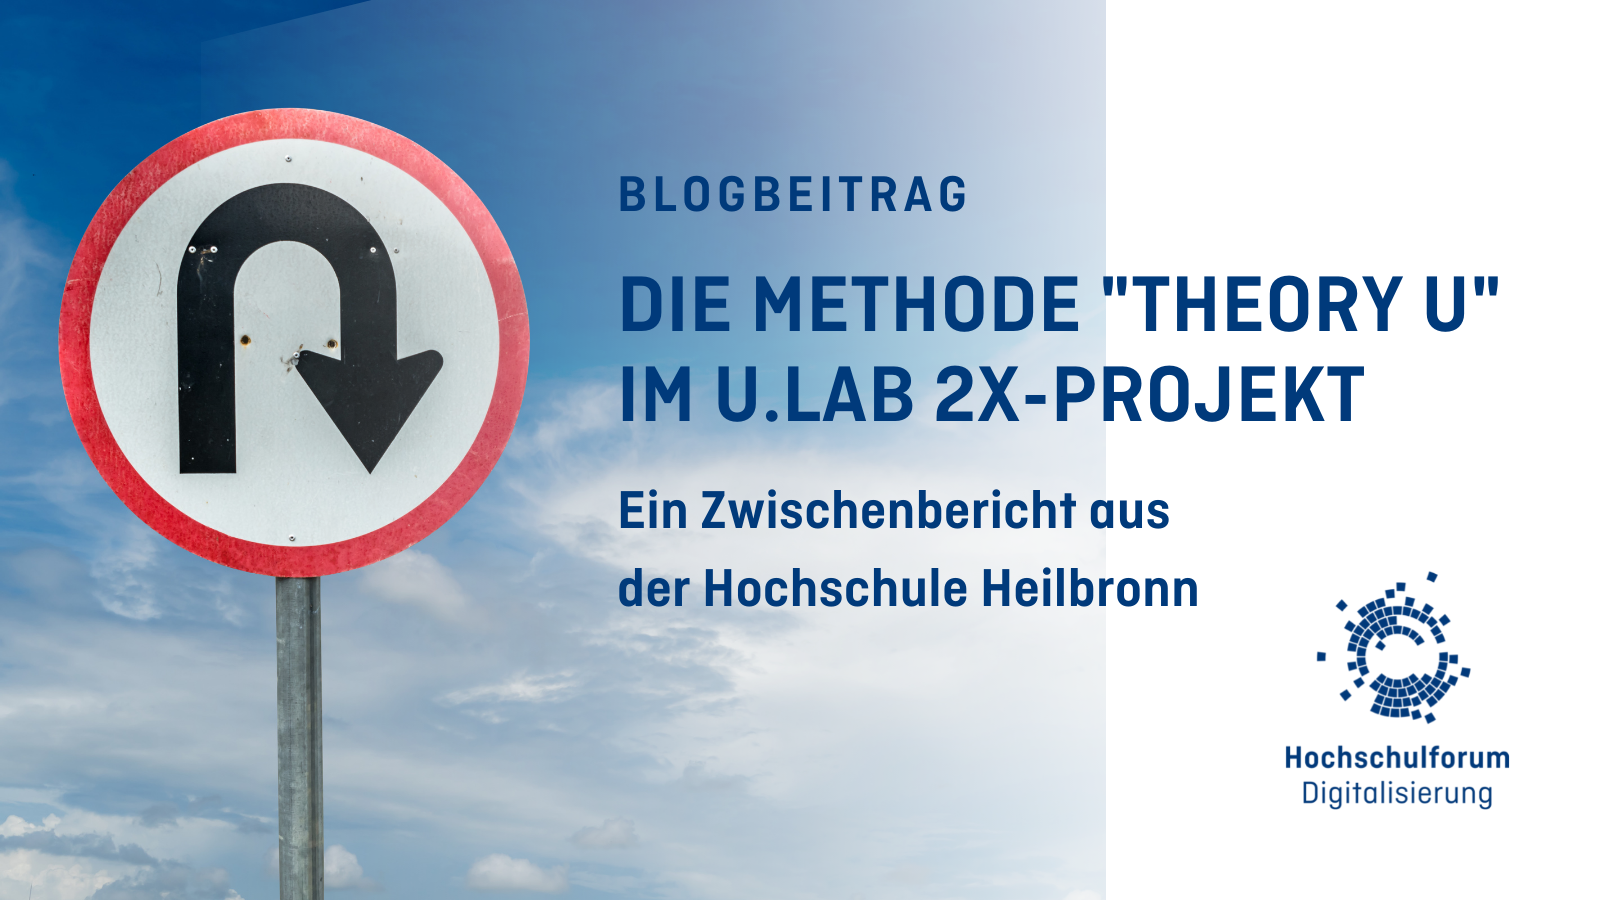 Titelbild: Die Methode "THEORY U" IM U.LAB 2X-PROJEKT. Ein Zwischenbericht aus der Hochschule Heilbronn. Logo: Hochschulforum Digitalisierung